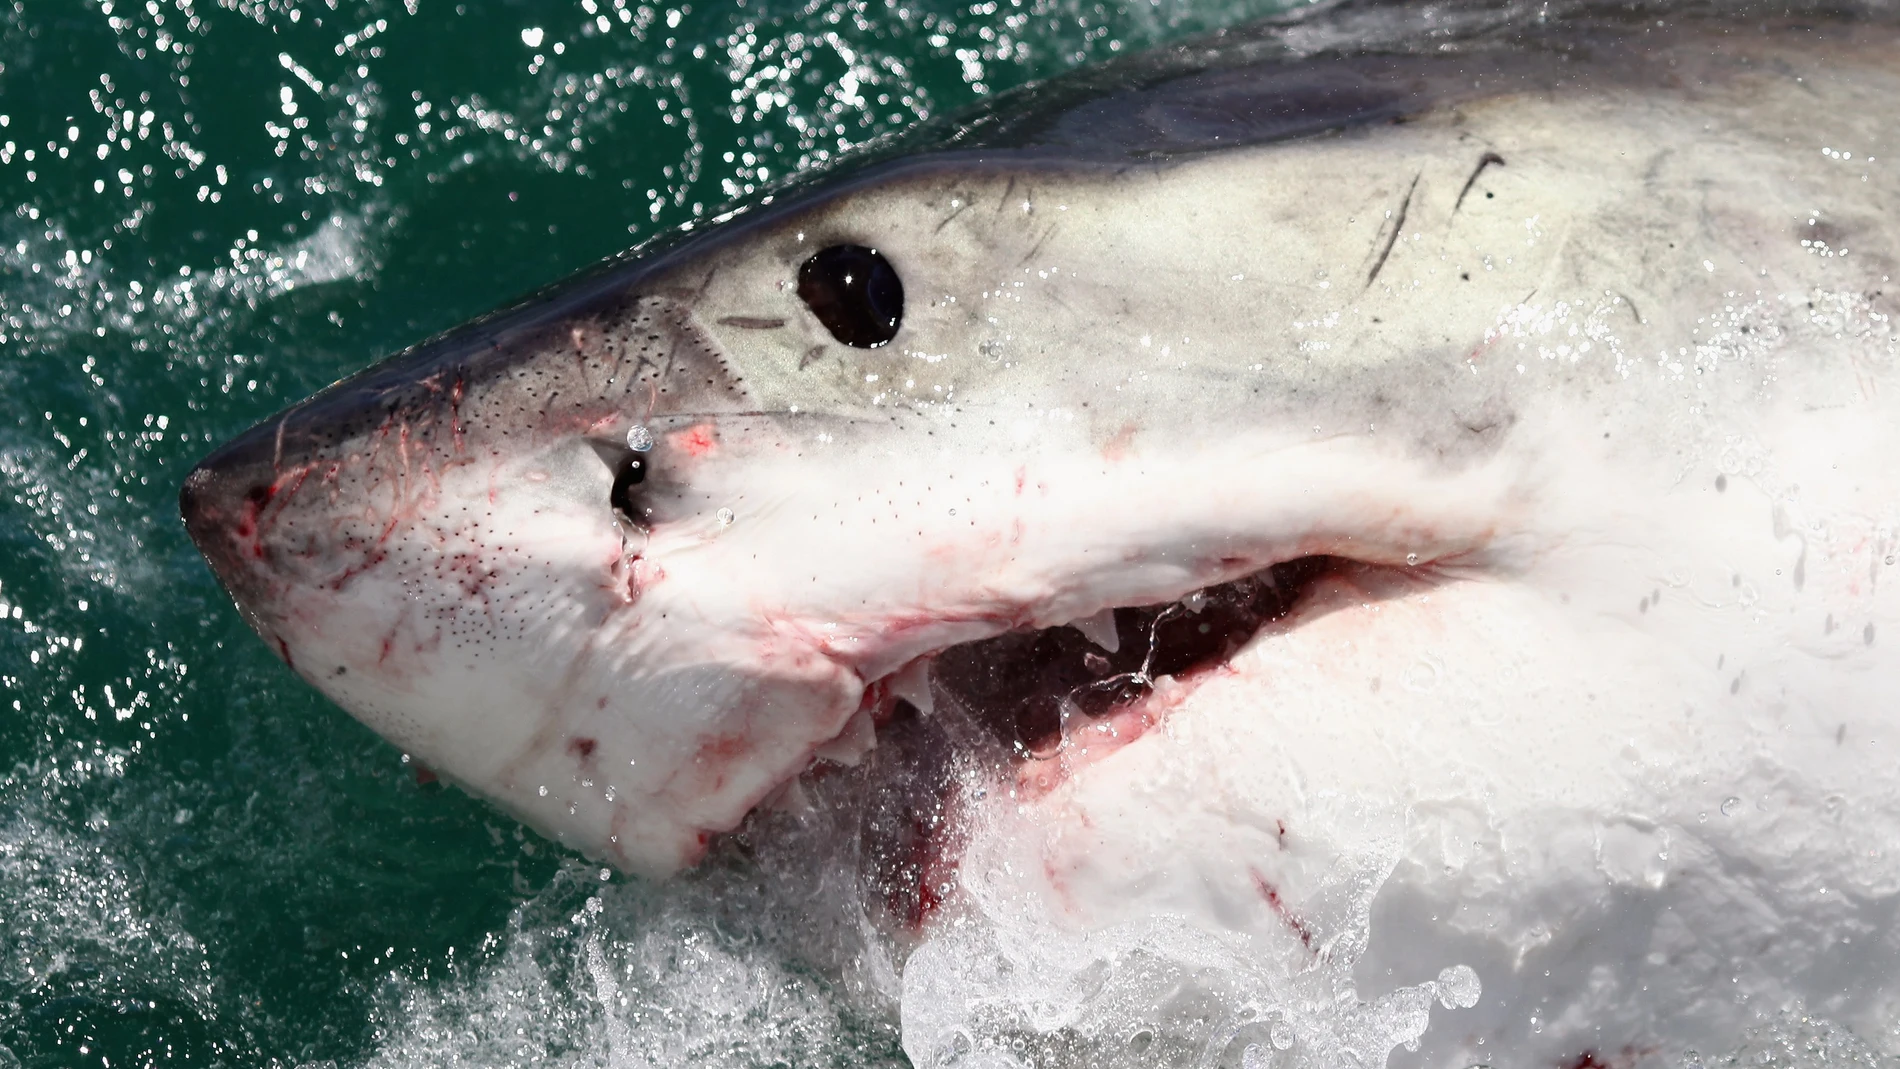 El tiburón, uno de los animales más peligrosos que habita en el planeta